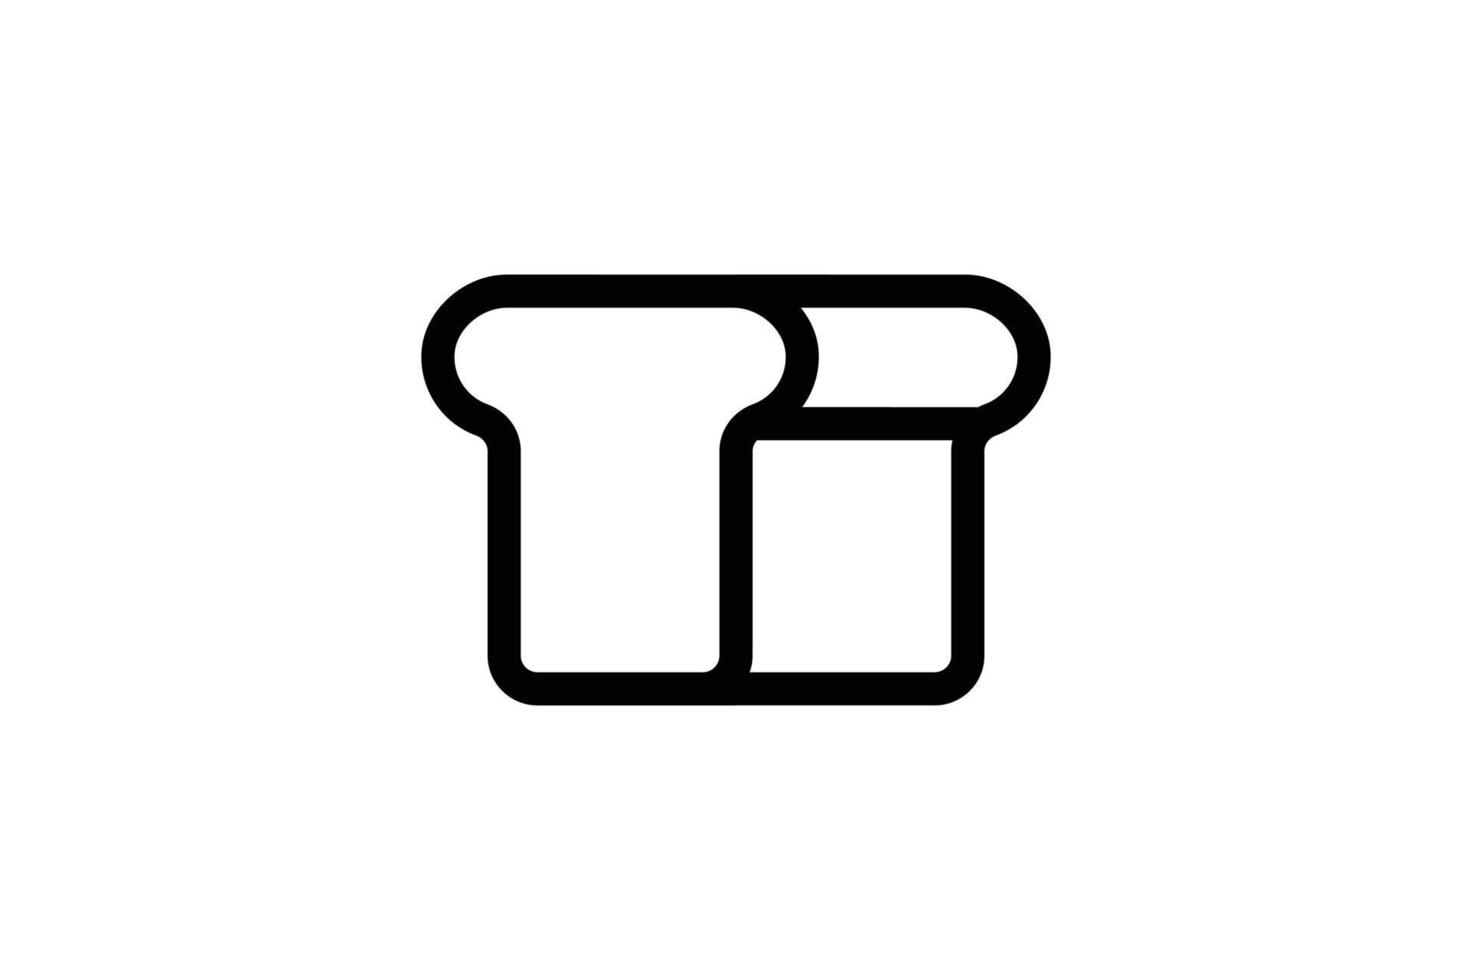 wit brood pictogram bakkerij lijnstijl gratis vector